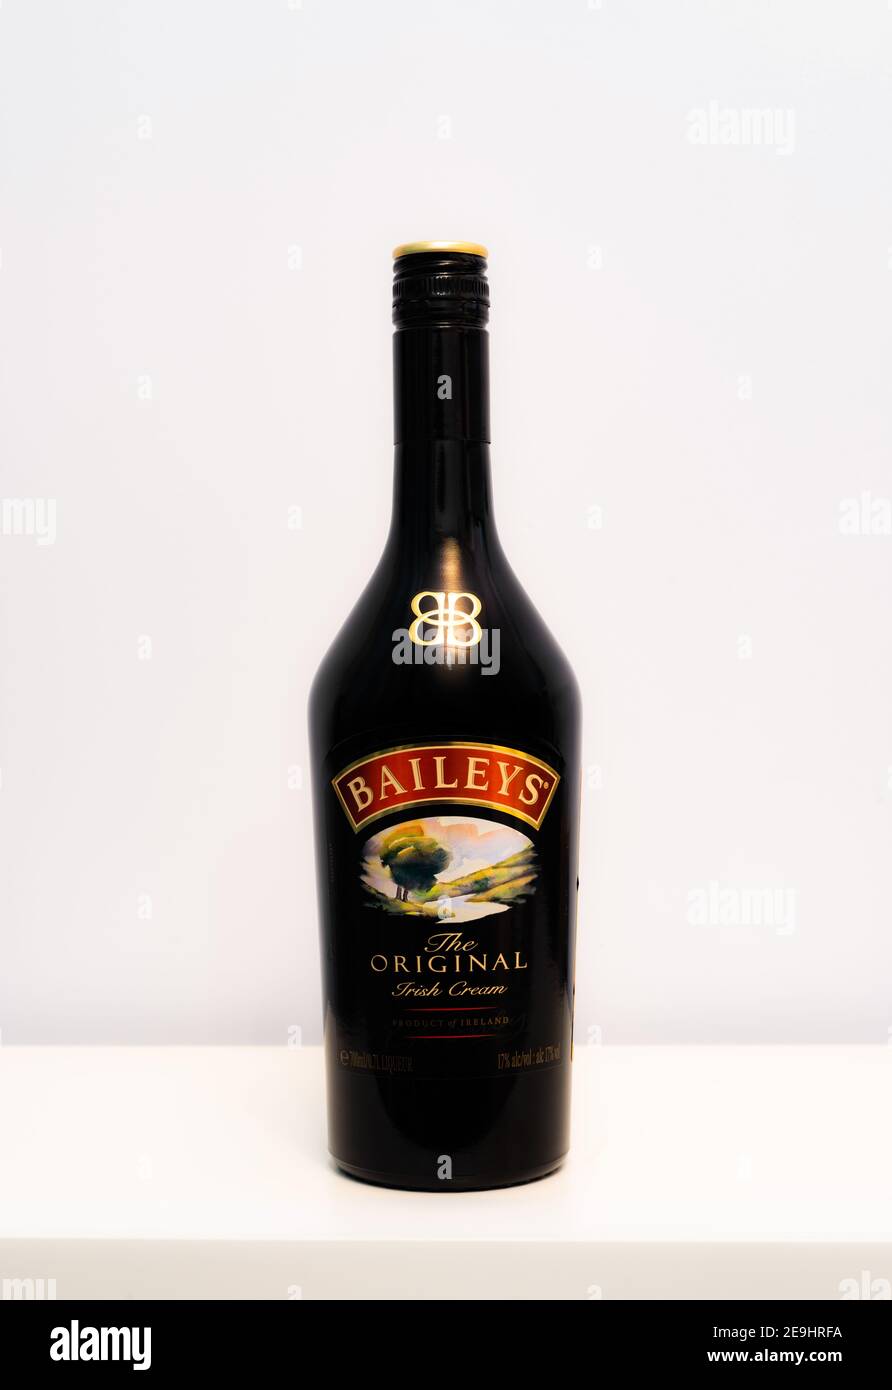 Baileys liquor bottle standing on the white Stock Photo